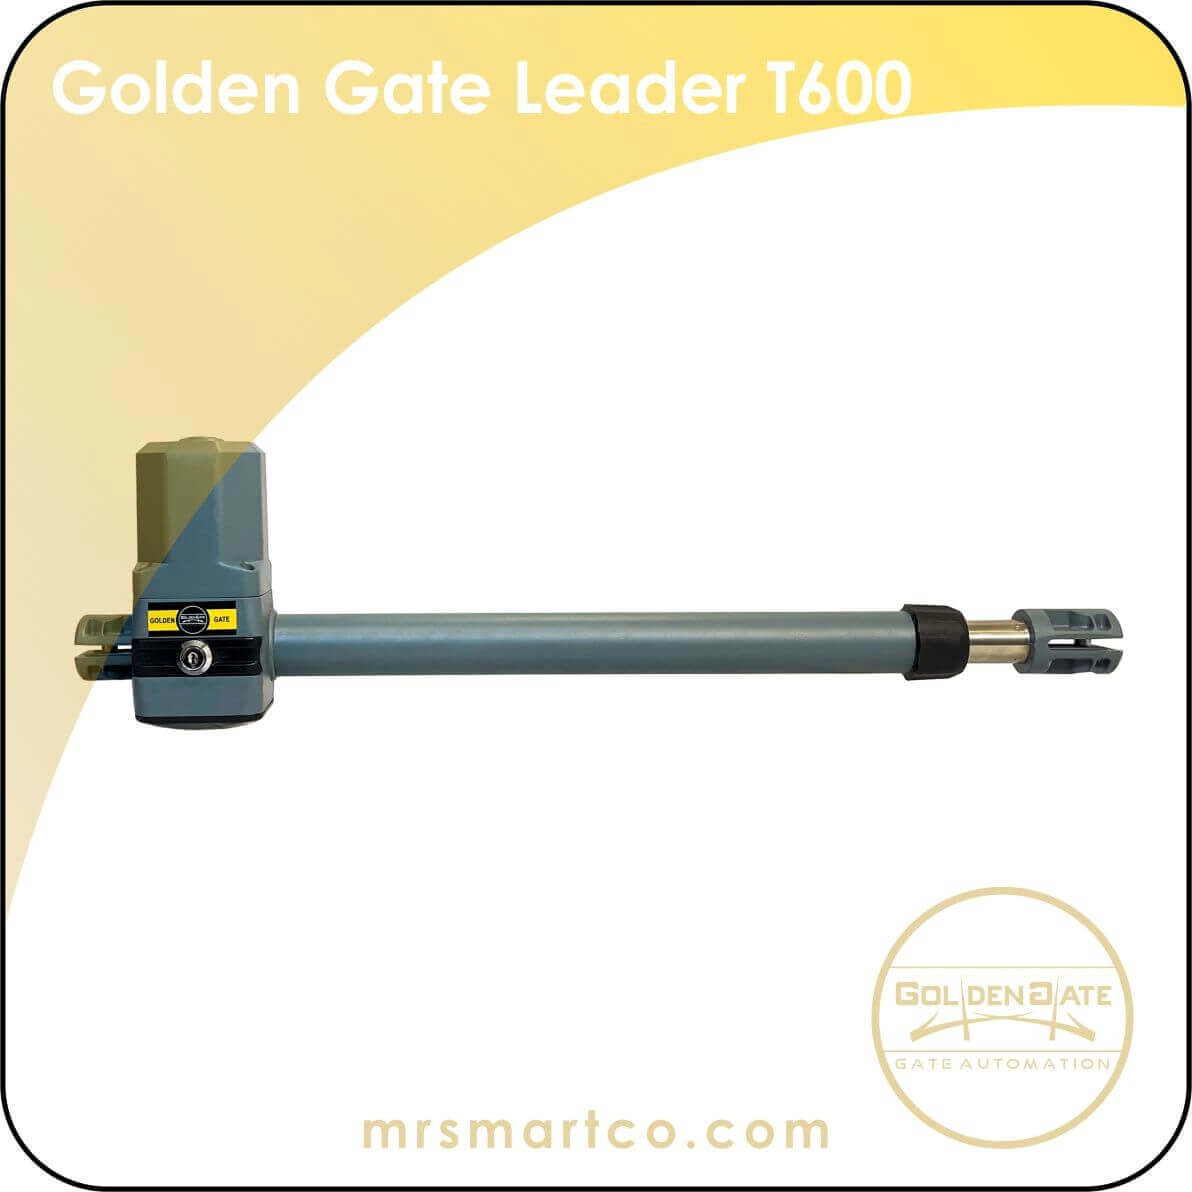 Goden Gate leader T600